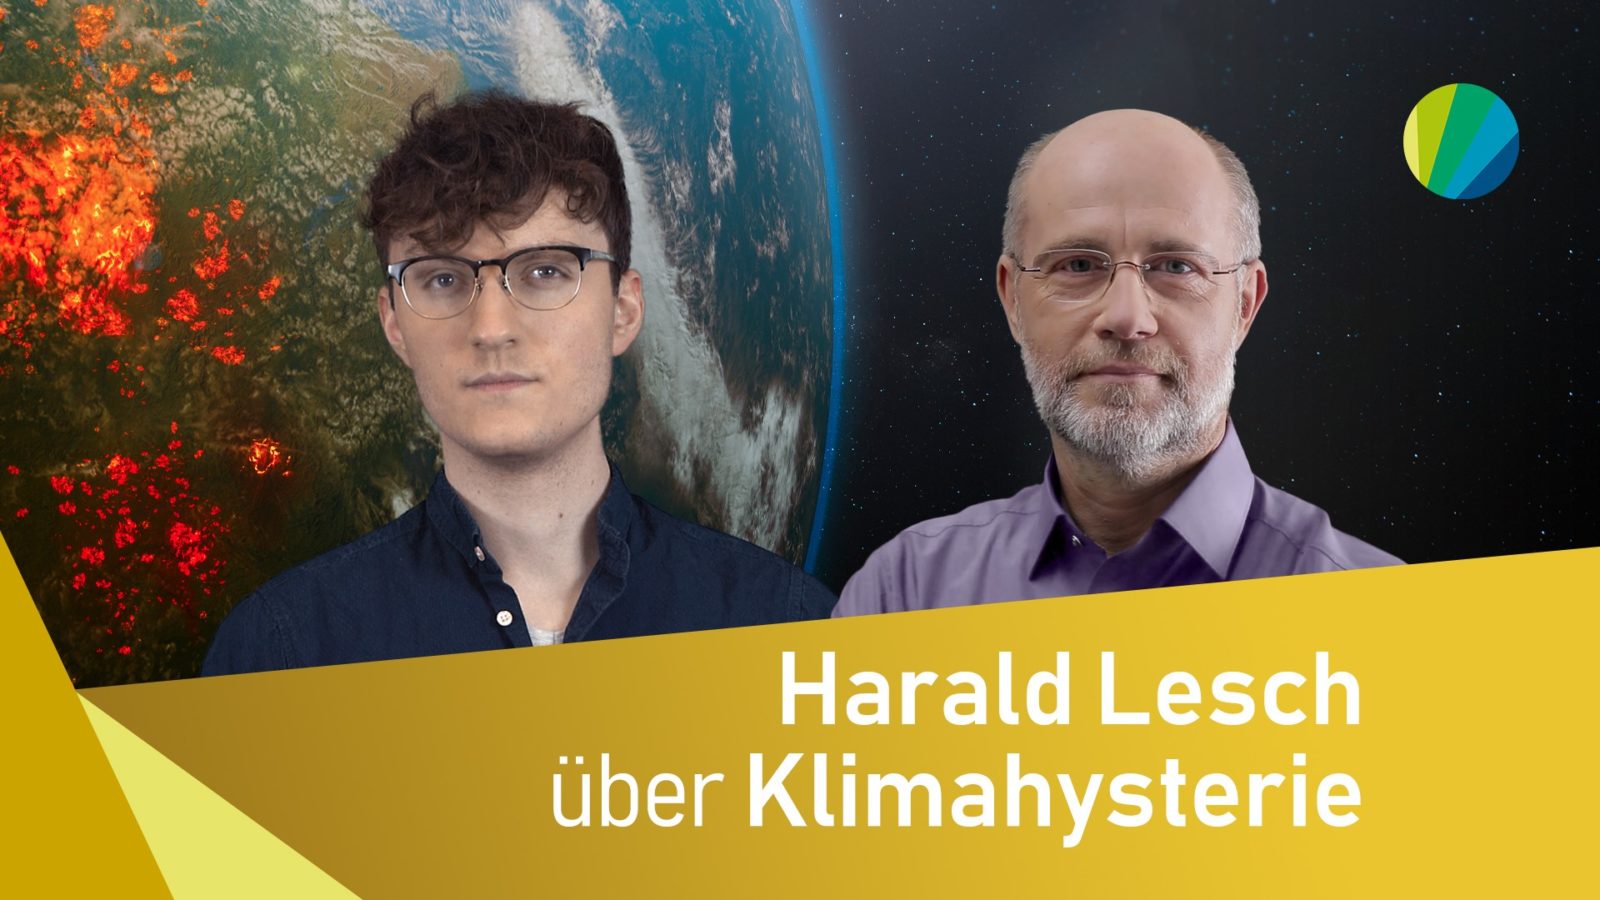 junger Moderator und Harald Lesch vor Bild einer überhitzenden Erde mit Teingeblendetem Titel: Harald Lesch über Klimahysterie